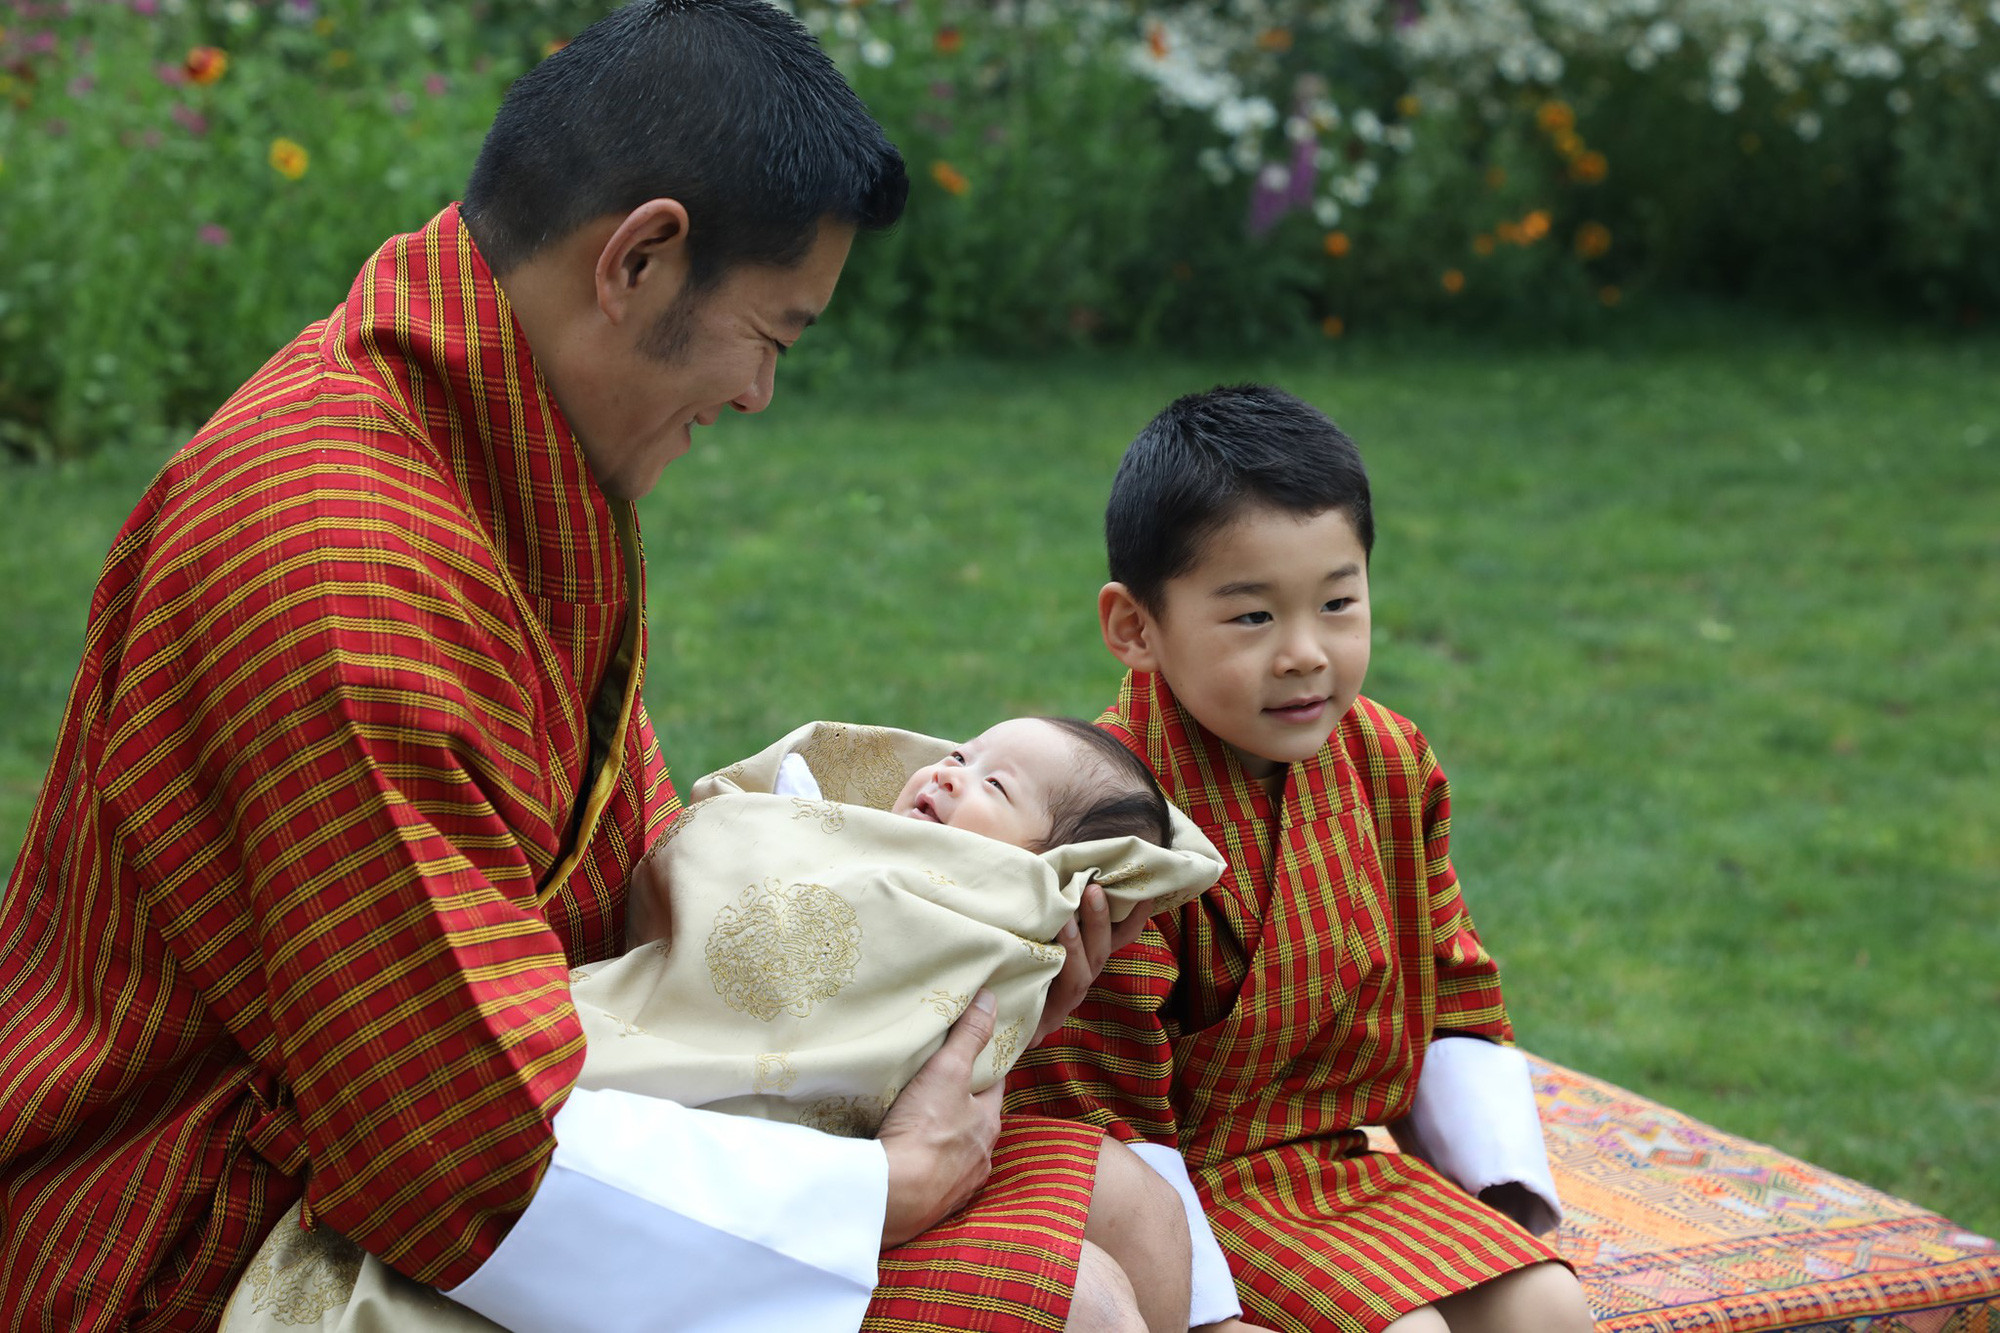 Hoàng hậu &quot;vạn người mê&quot; Bhutan chính thức công bố hình ảnh con trai thứ 2 mới sinh khiến cộng động mạng phát sốt - Ảnh 2.